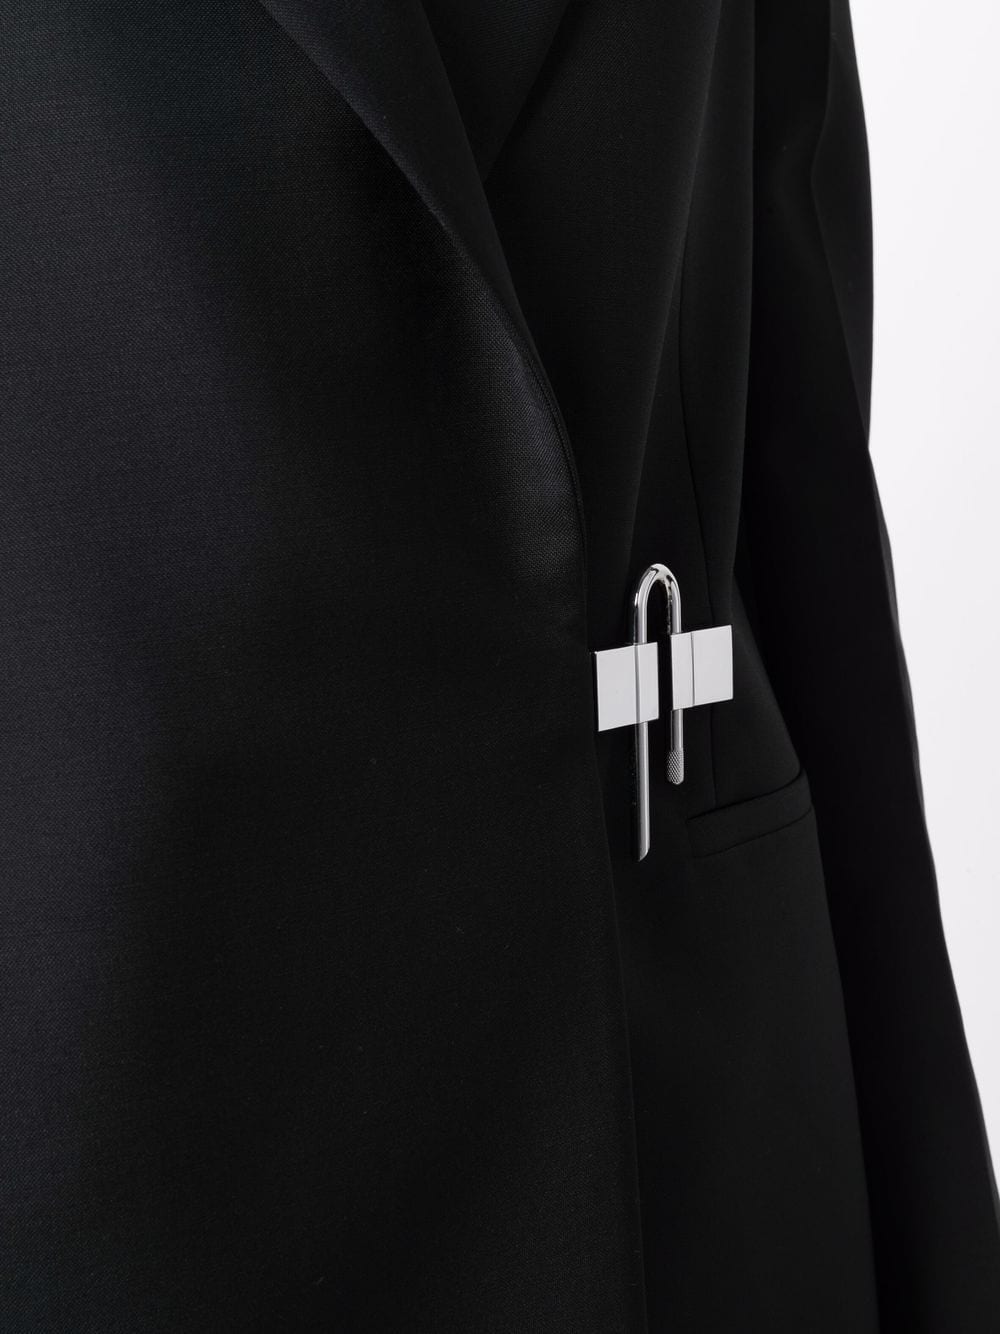 фото Givenchy шерстяной блейзер с металлическим декором